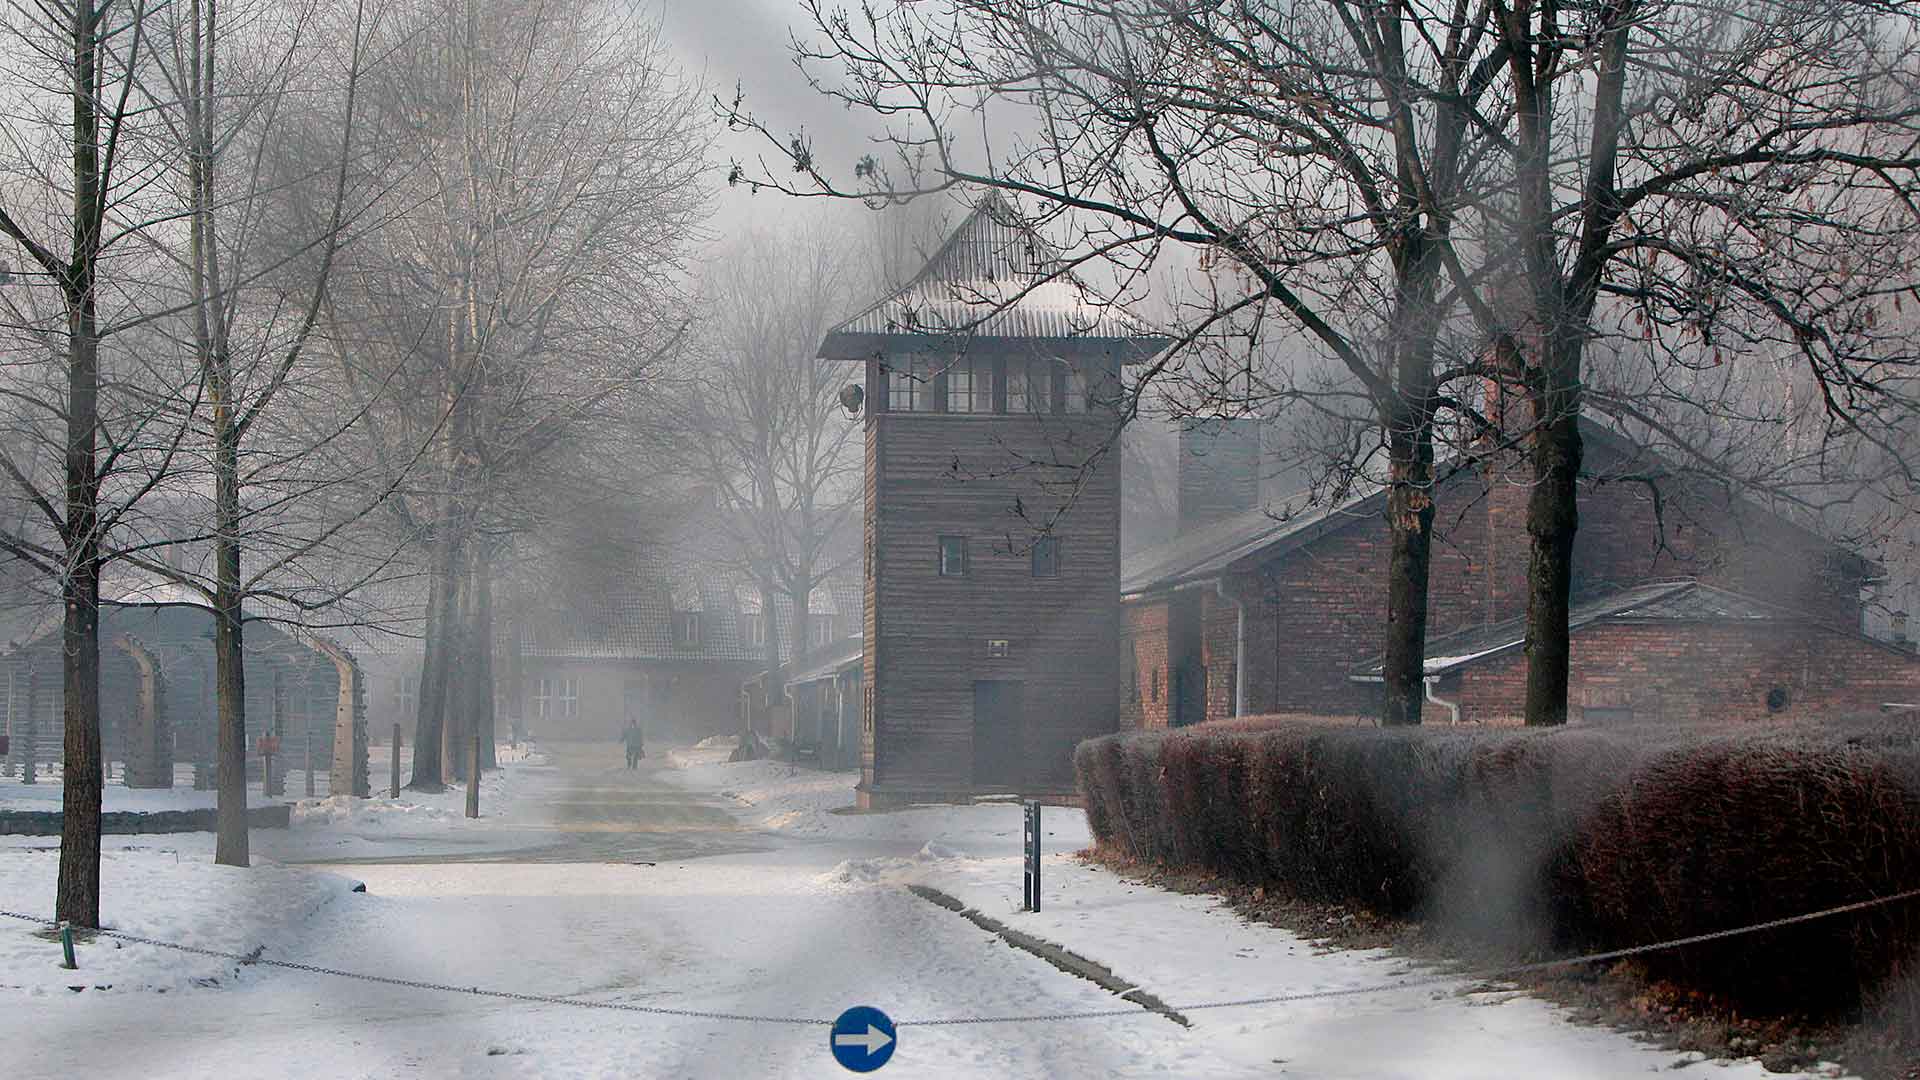 Condenado un neonazi que publicó en internet una réplica en miniatura de Auschwitz